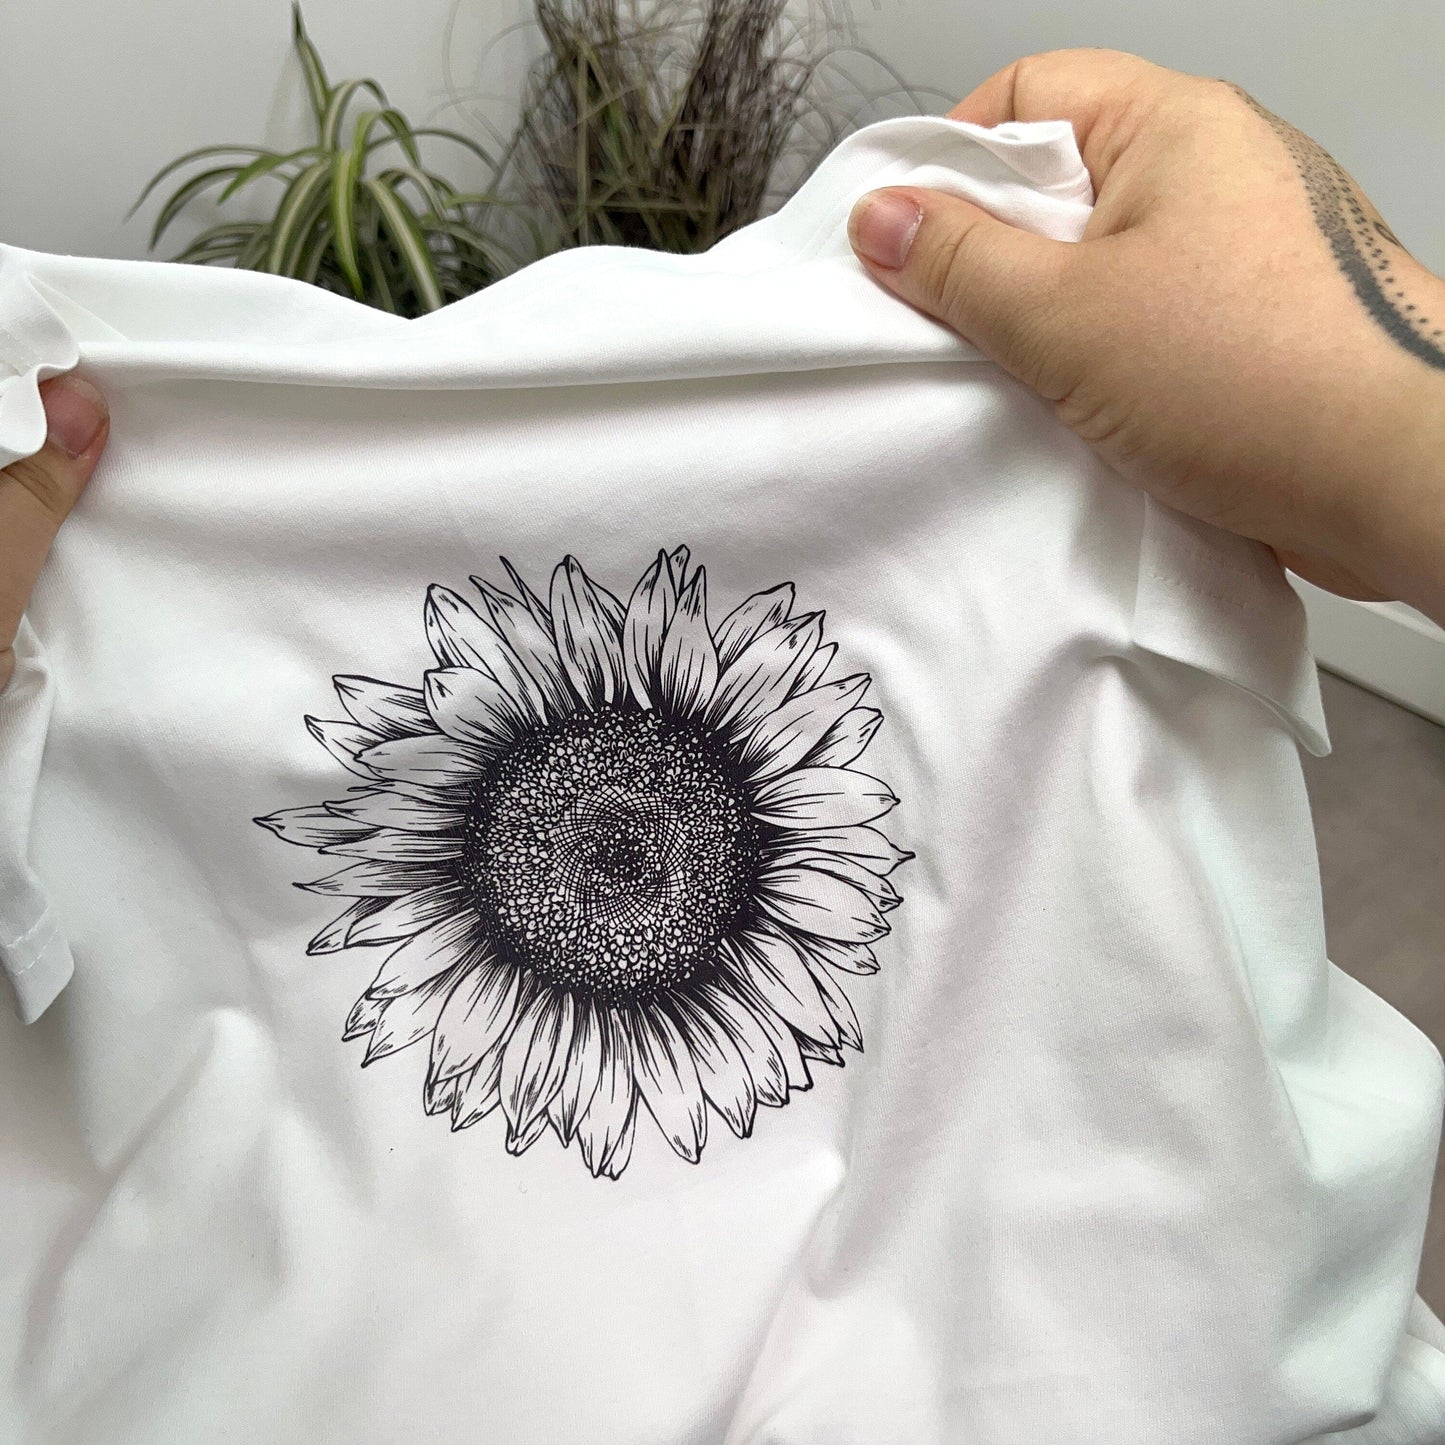 Women's Sunflower T Shirt, sunflower top floral t shirt